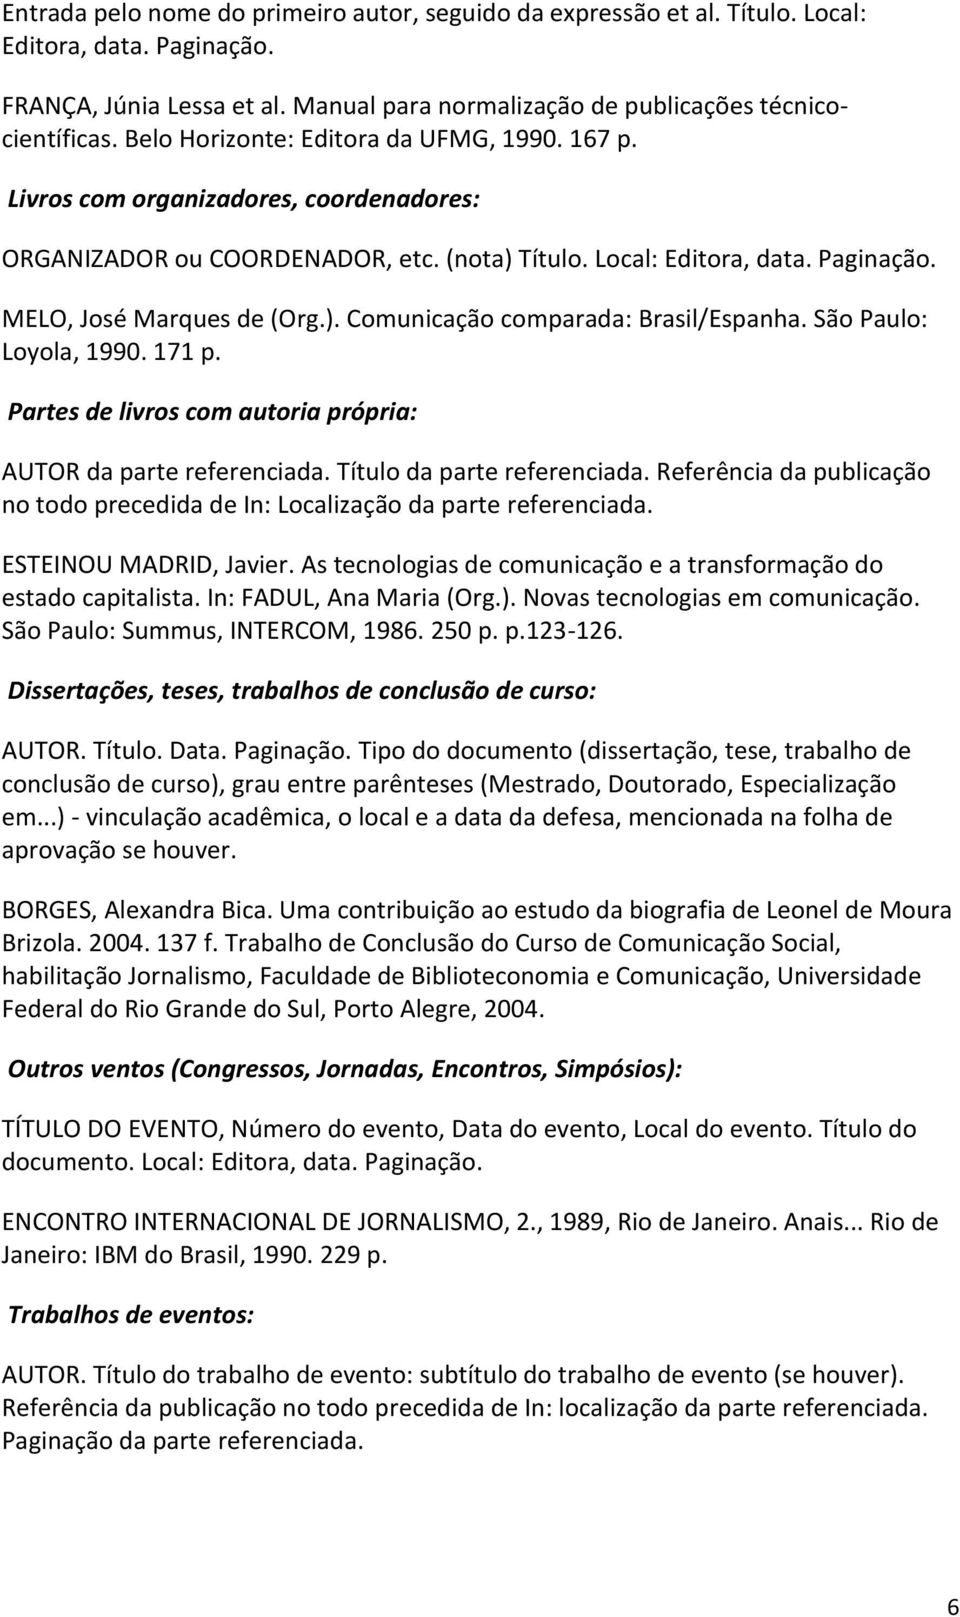 São Paulo: Loyola, 1990. 171 p. Partes de livros com autoria própria: AUTOR da parte referenciada. Título da parte referenciada.